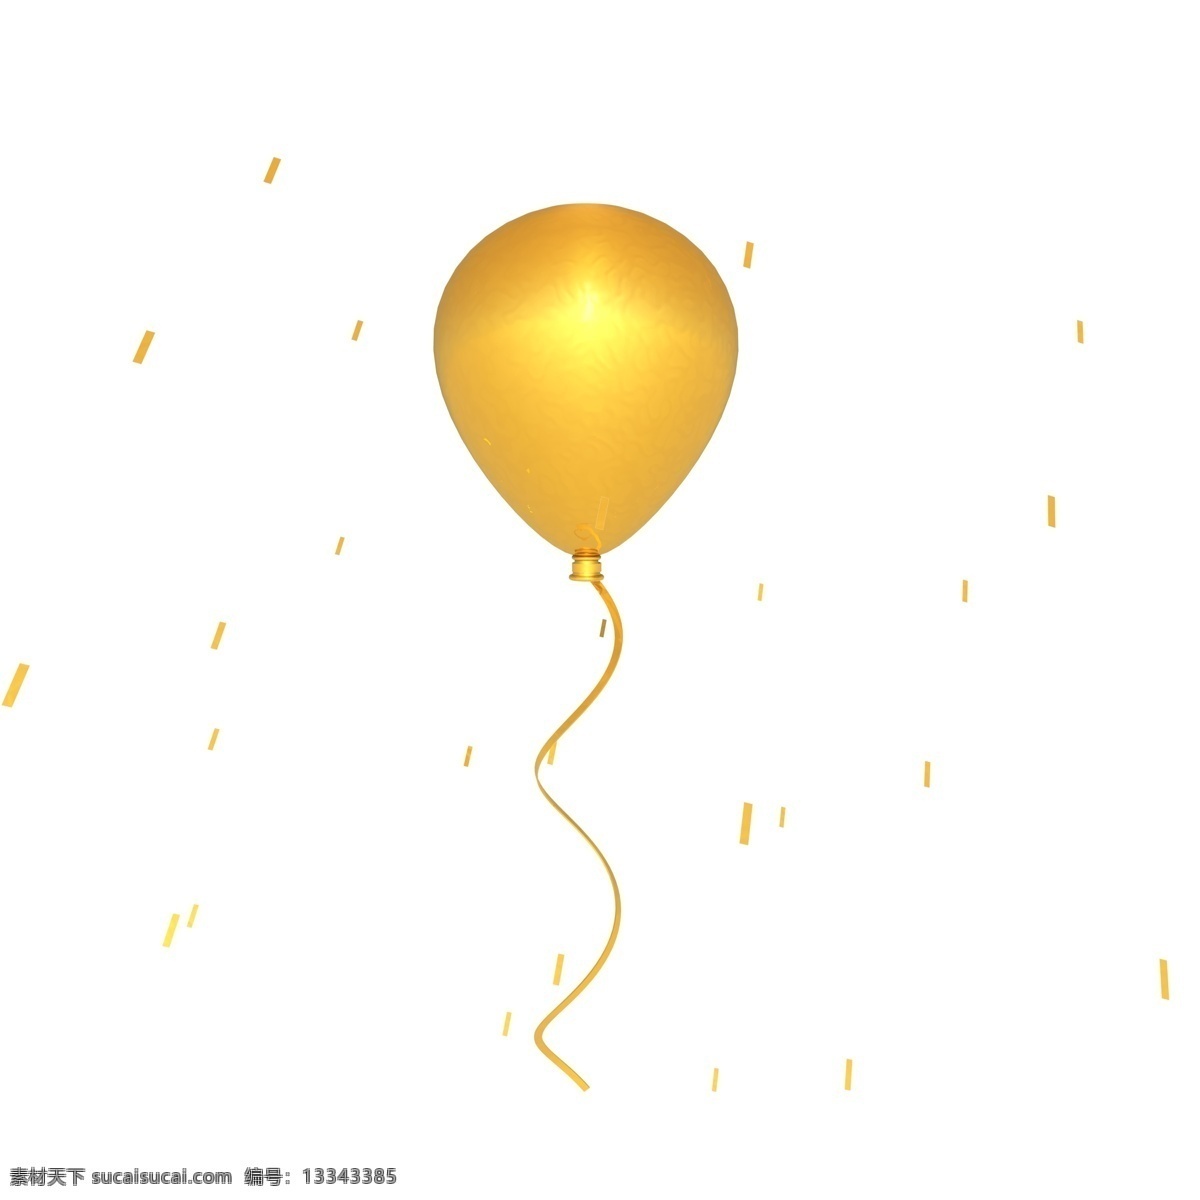 c4d 立体 漂浮 金色 气球 3d立体 金色气球 海报 装饰 漂浮气球 装饰图案 带线的金气球